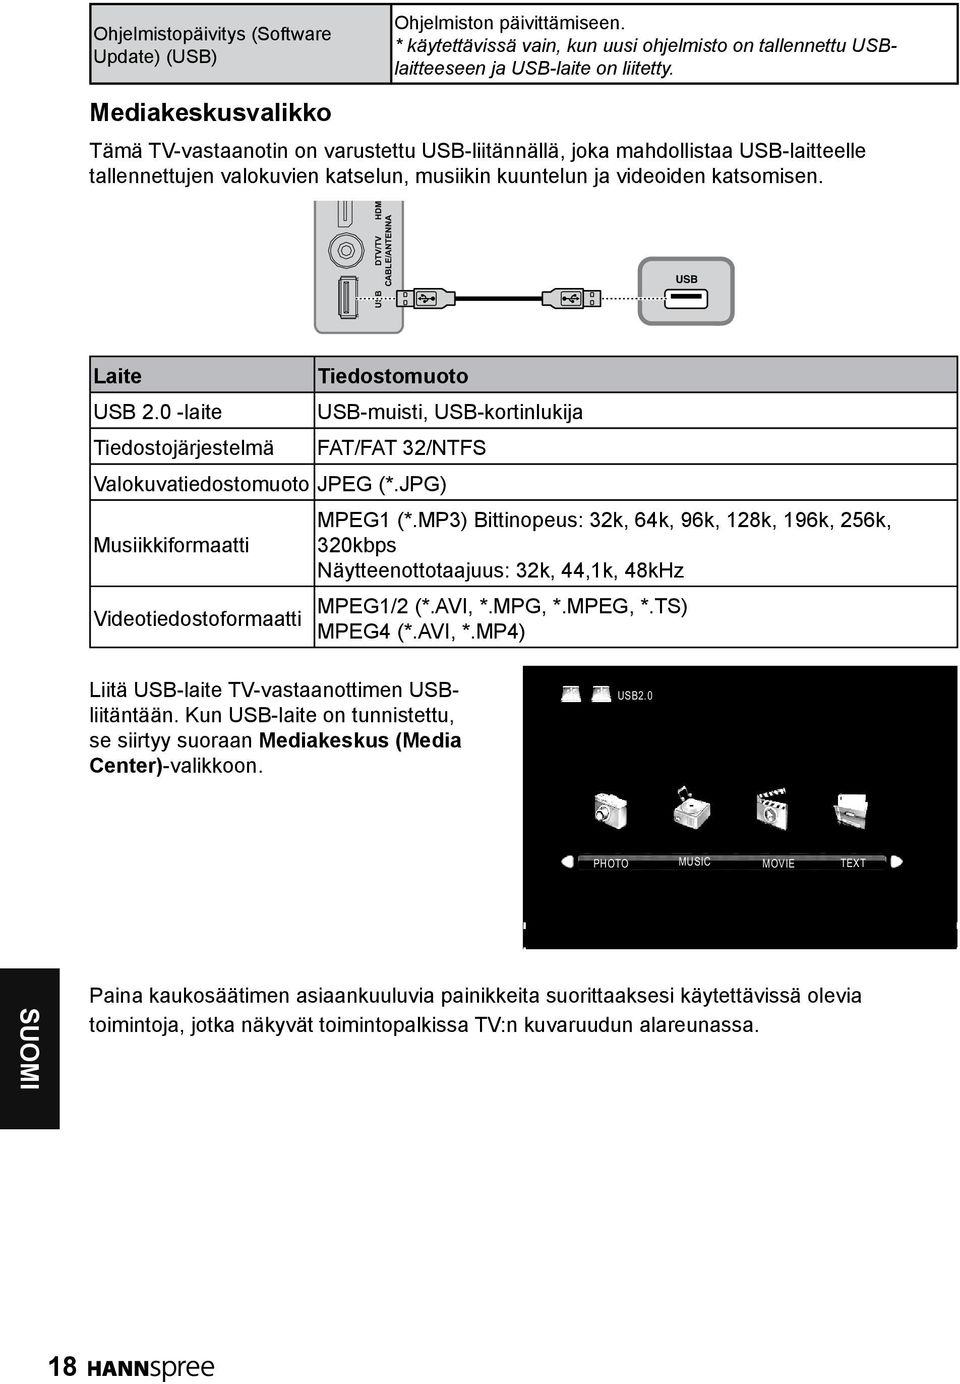 DTV/TV HDM CABLE/ANTENNA USB USB Laite USB 2.0 -laite Tiedostojärjestelmä Tiedostomuoto USB-muisti, USB-kortinlukija FAT/FAT 32/NTFS Valokuvatiedostomuoto JPEG (*.